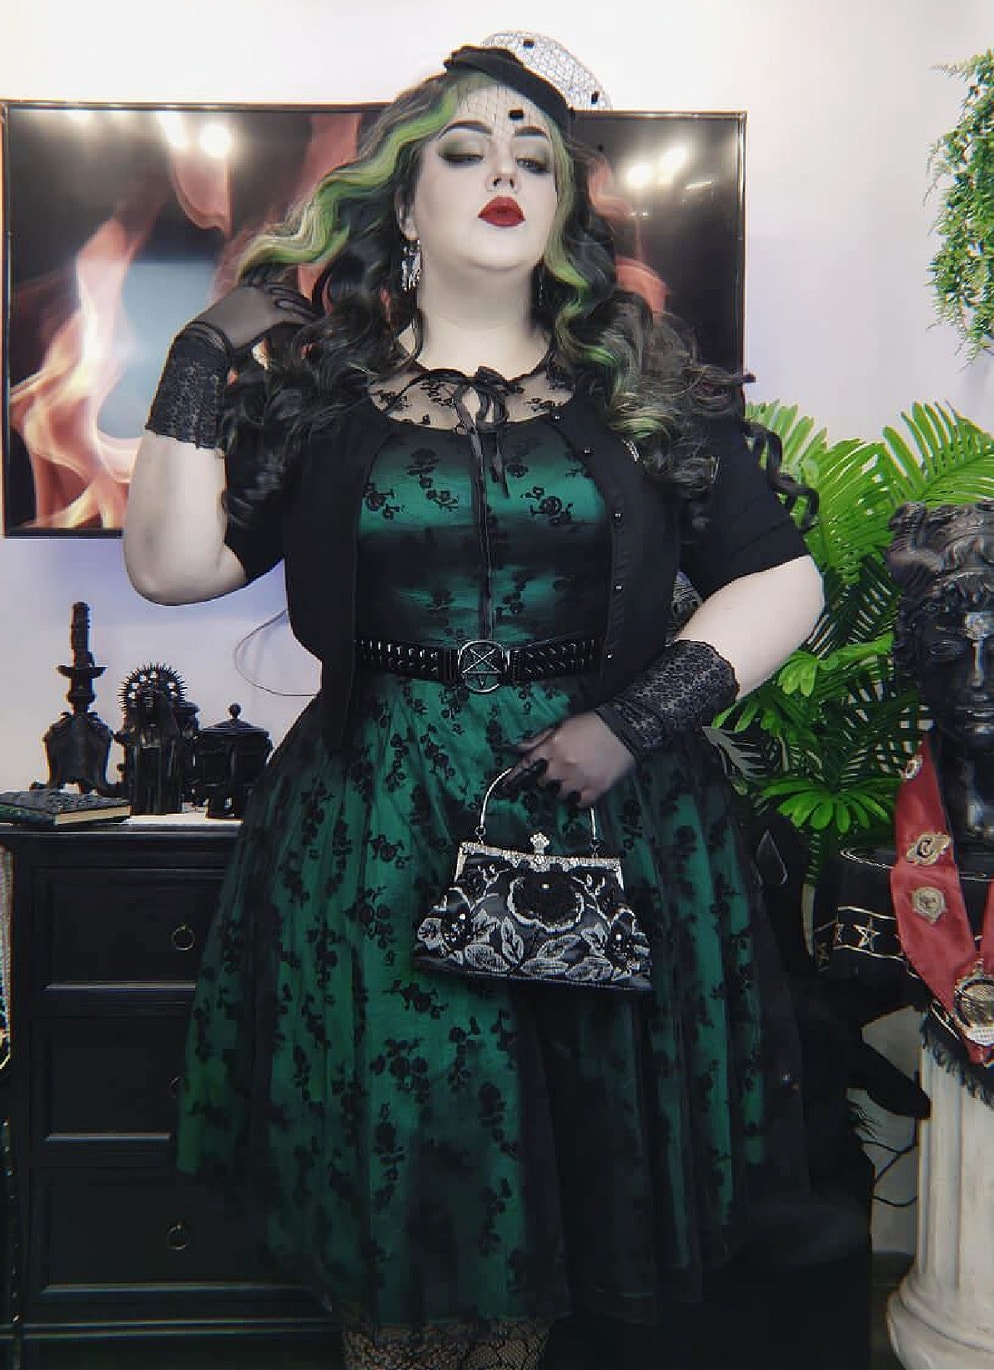 Voodoo Vixen 50's Retro Vintage Spitzen Swing Kleid Emerald Lace Dress in Grün 50er Jahre Petticoat Damenkleid Dress Spitze Spitzenkleid Gothic Elegant Abendkleid Cocktailkleid DRA2259